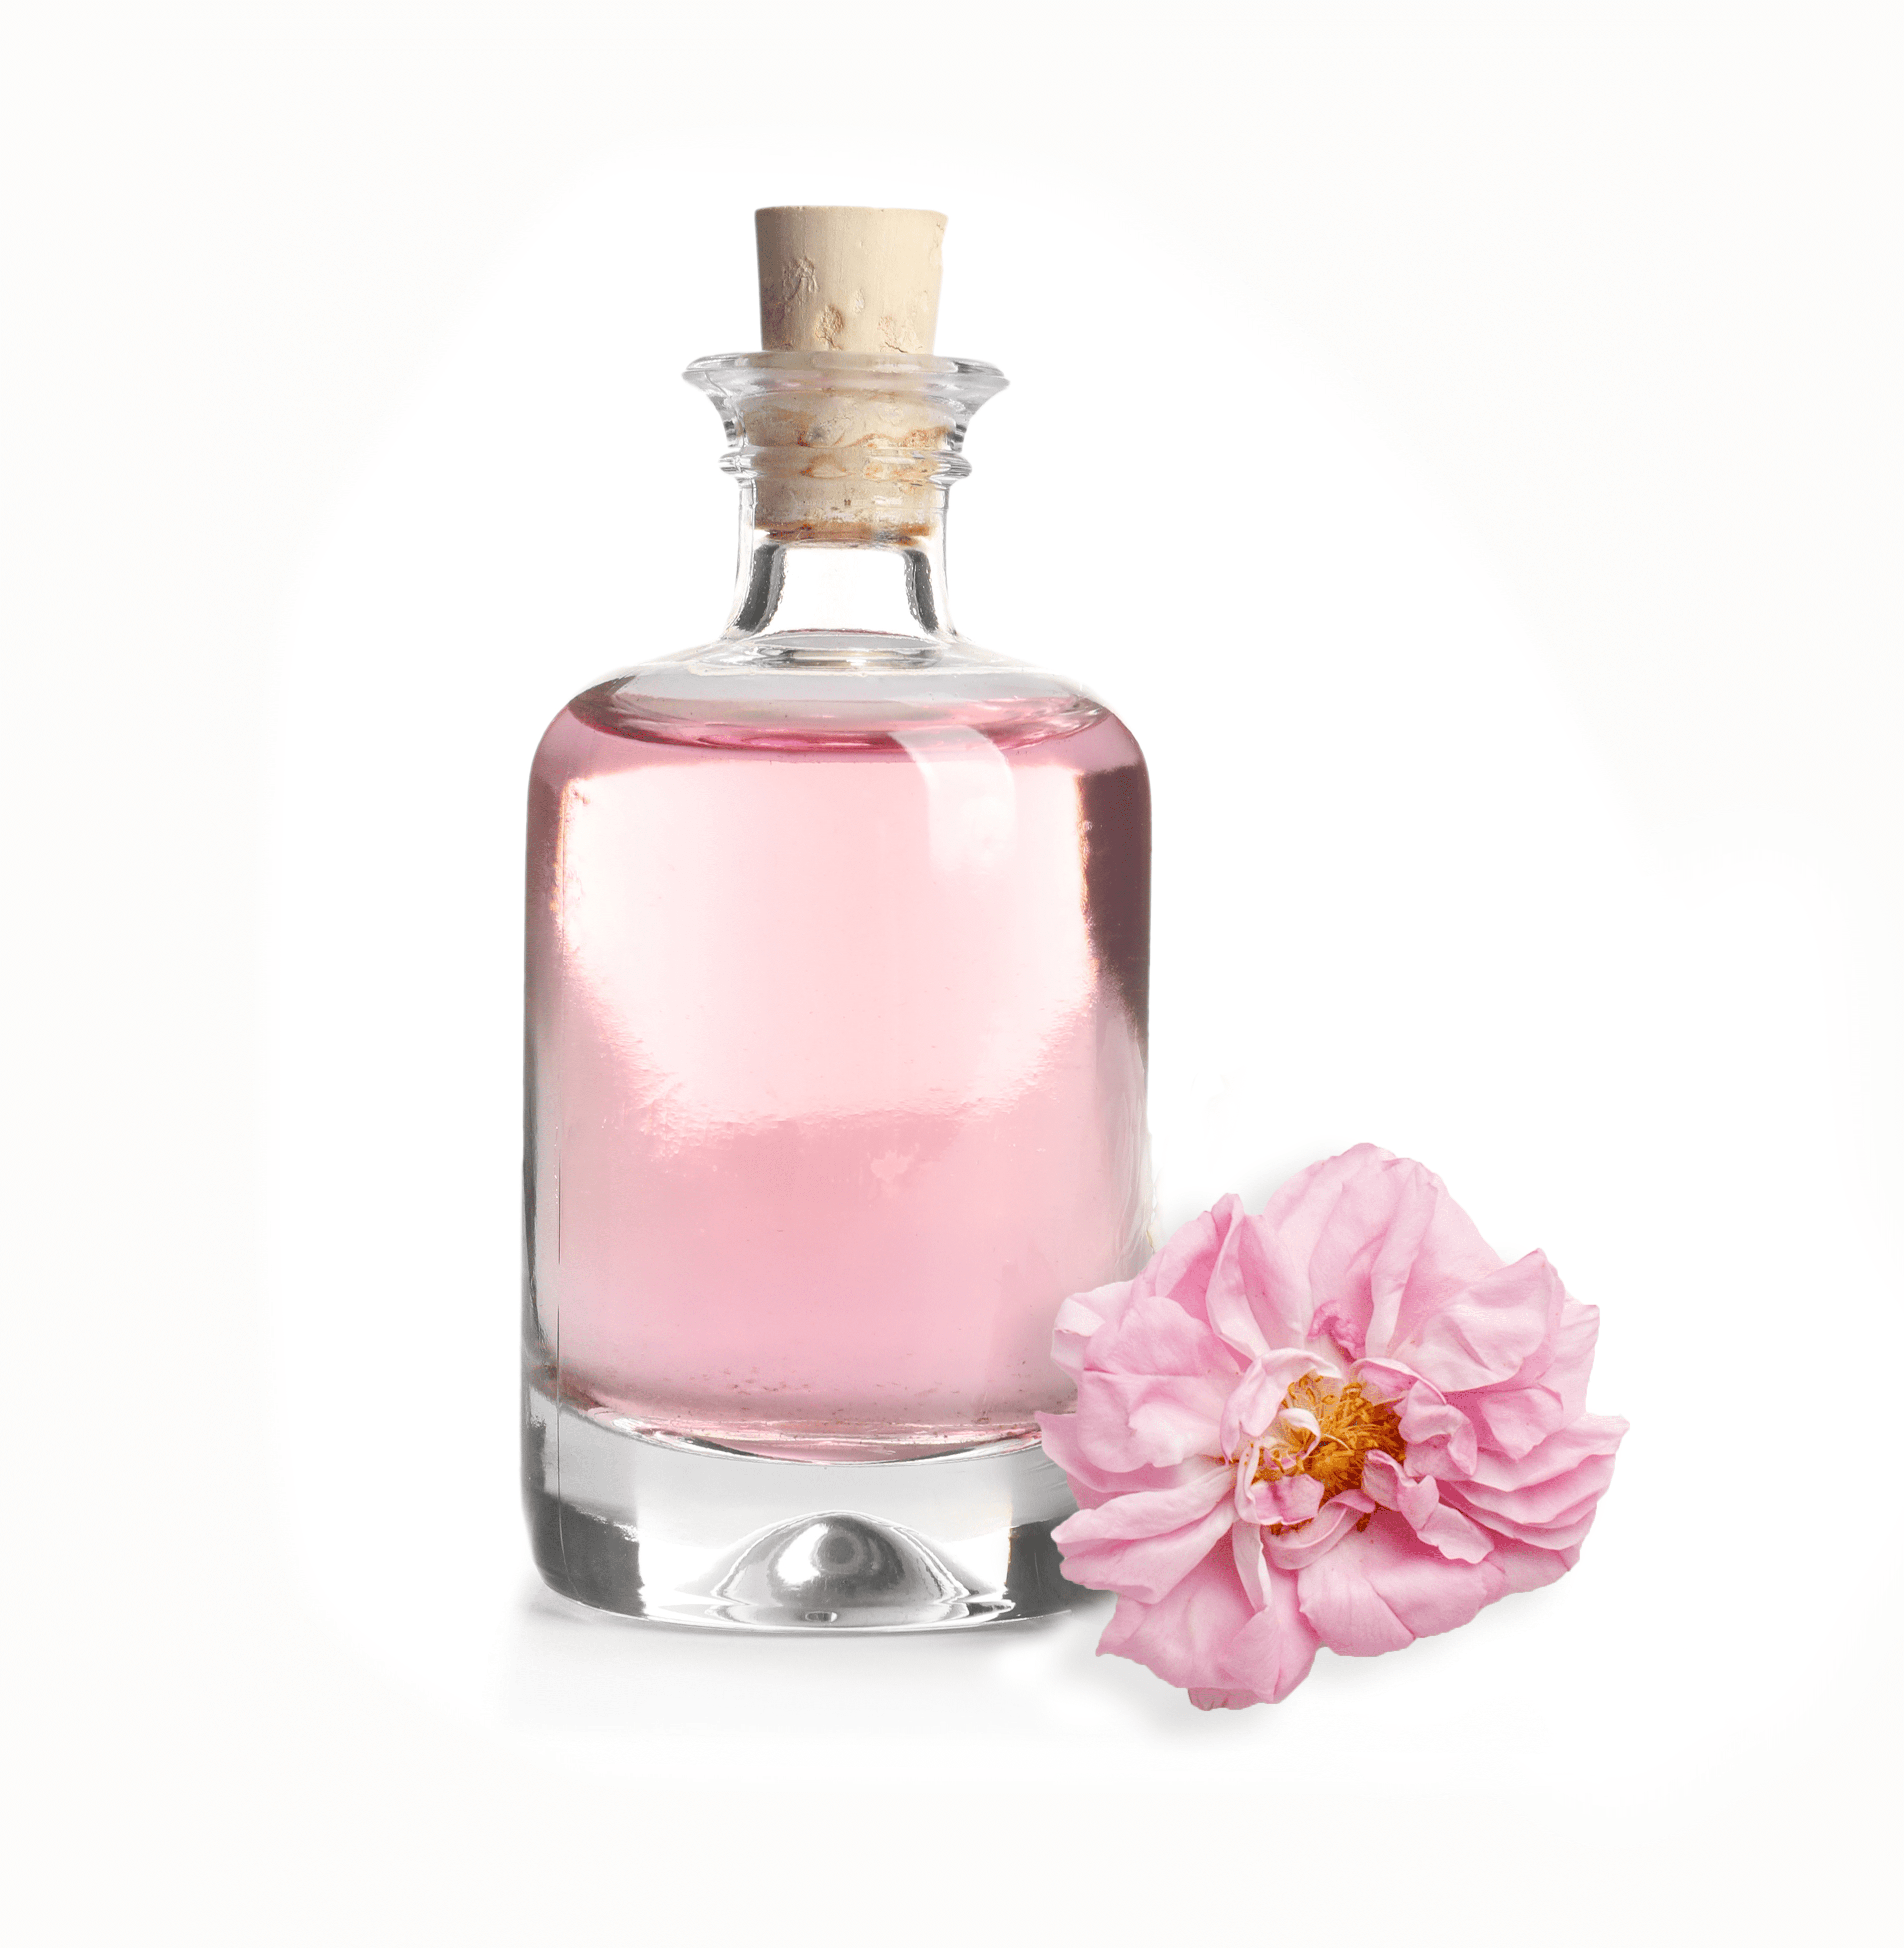 Rosenwasser - aus der Damaszenser Rose  - stärkt das Bindegewebe, harmonisiert, regeneriert und erfrischt die Haut und spendet Feuchtigkeit, mildert Rötungen: hilfreich bei Couperose